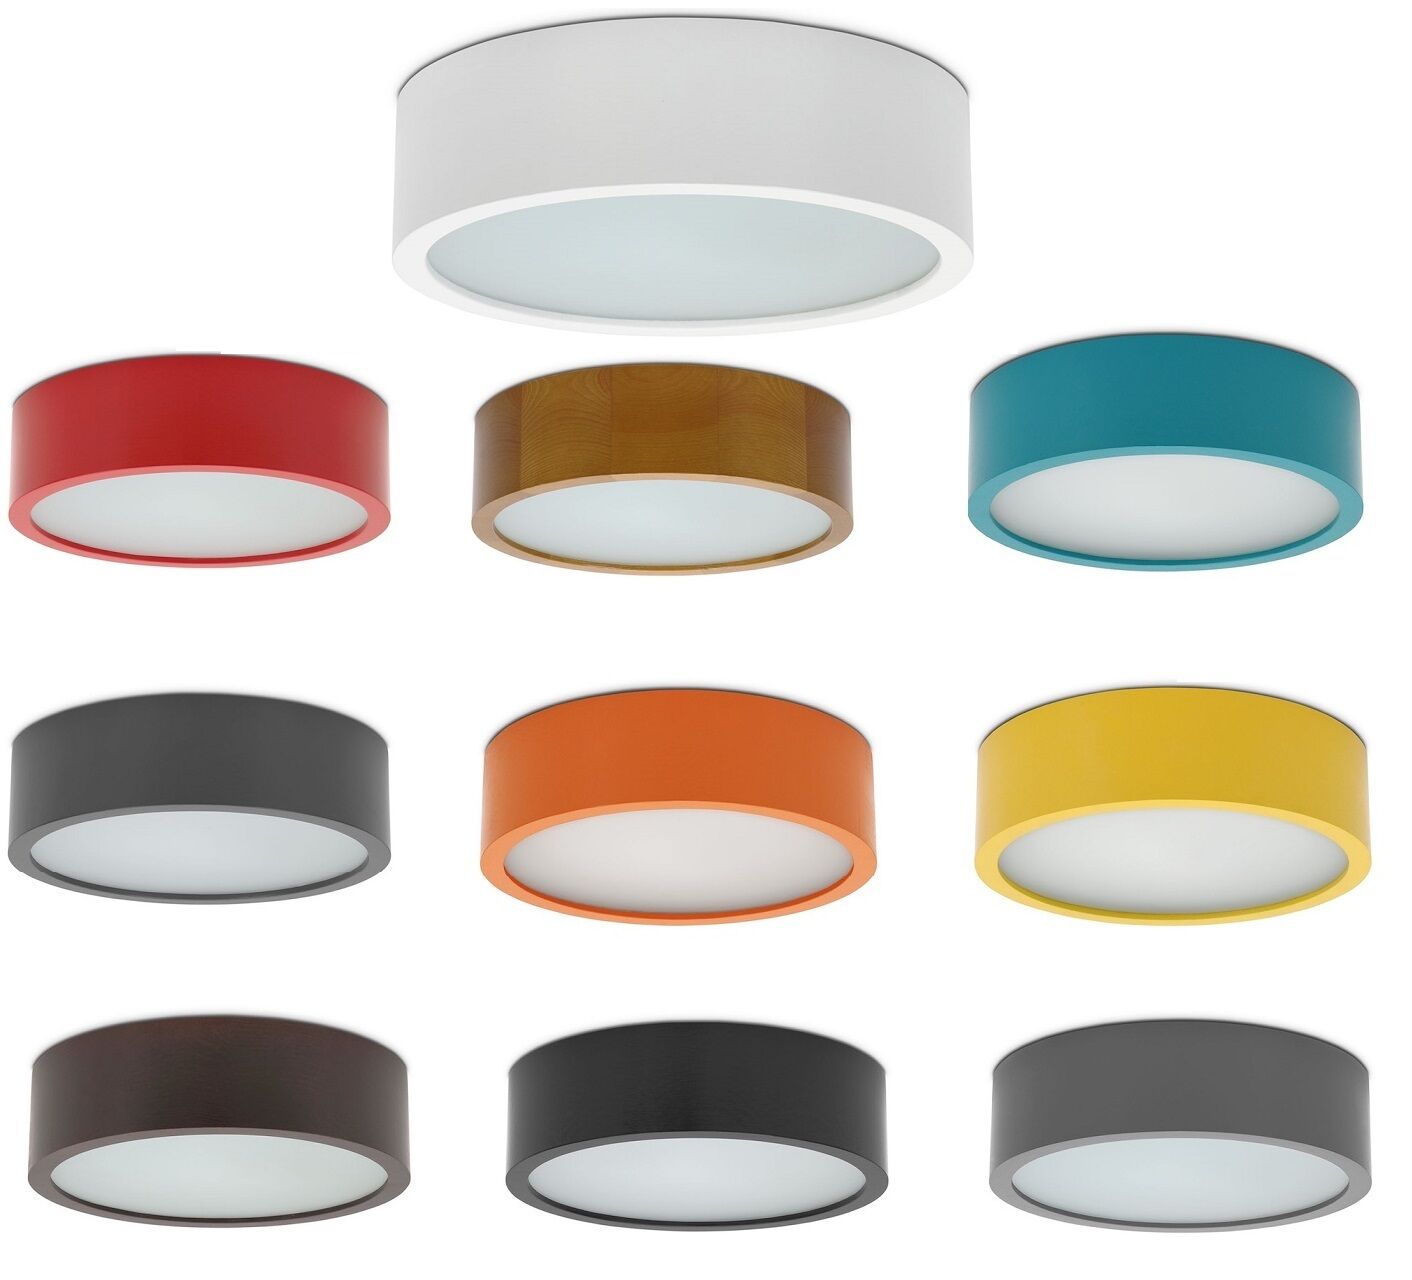 Viki Deckenleuchte Modell:: Deckenlampe Eiche Viki Viki 275 Lampen 1xE27 Modern 275 Farbe:: 